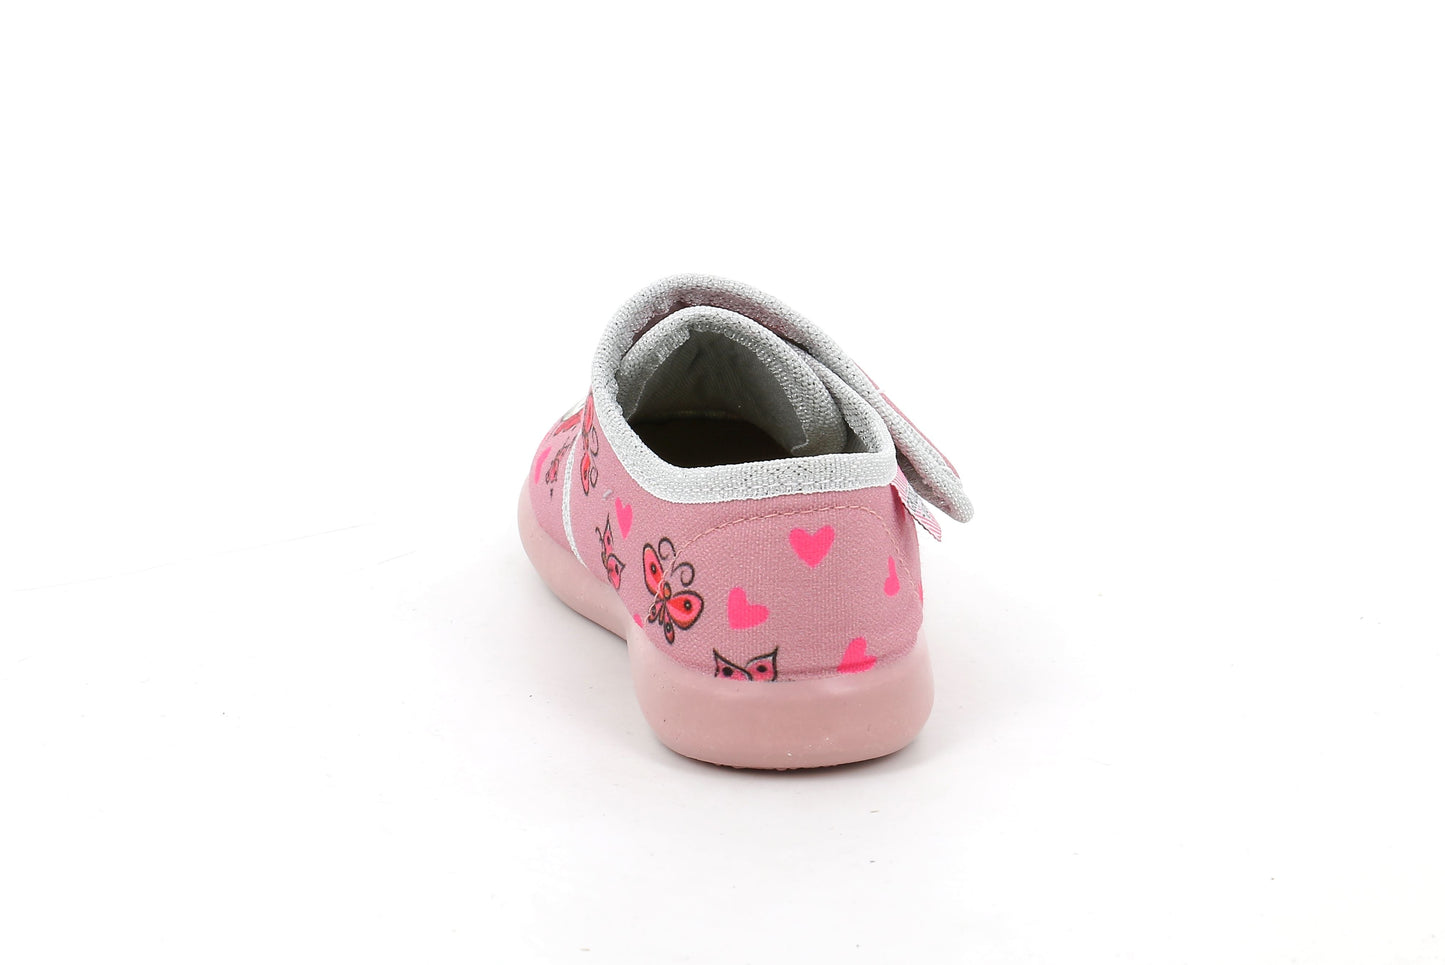 Nonnetto slipper for girls